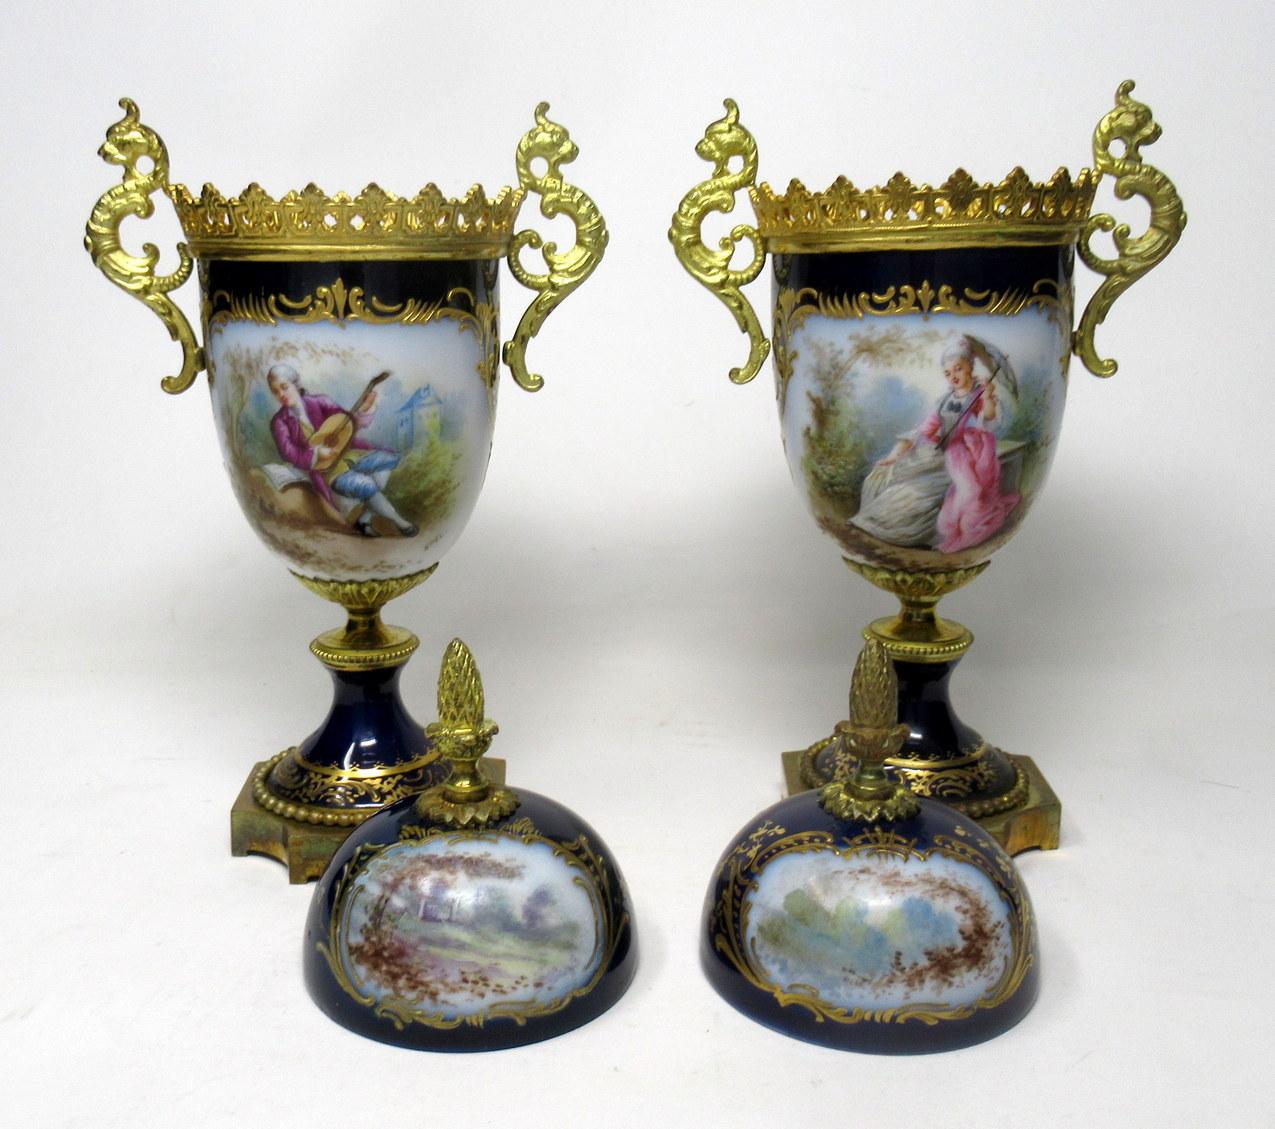 French Sèvres Porcelain Watteau Scene Ormolu Cobalt Blue Urns Vases 19th Century, Pair